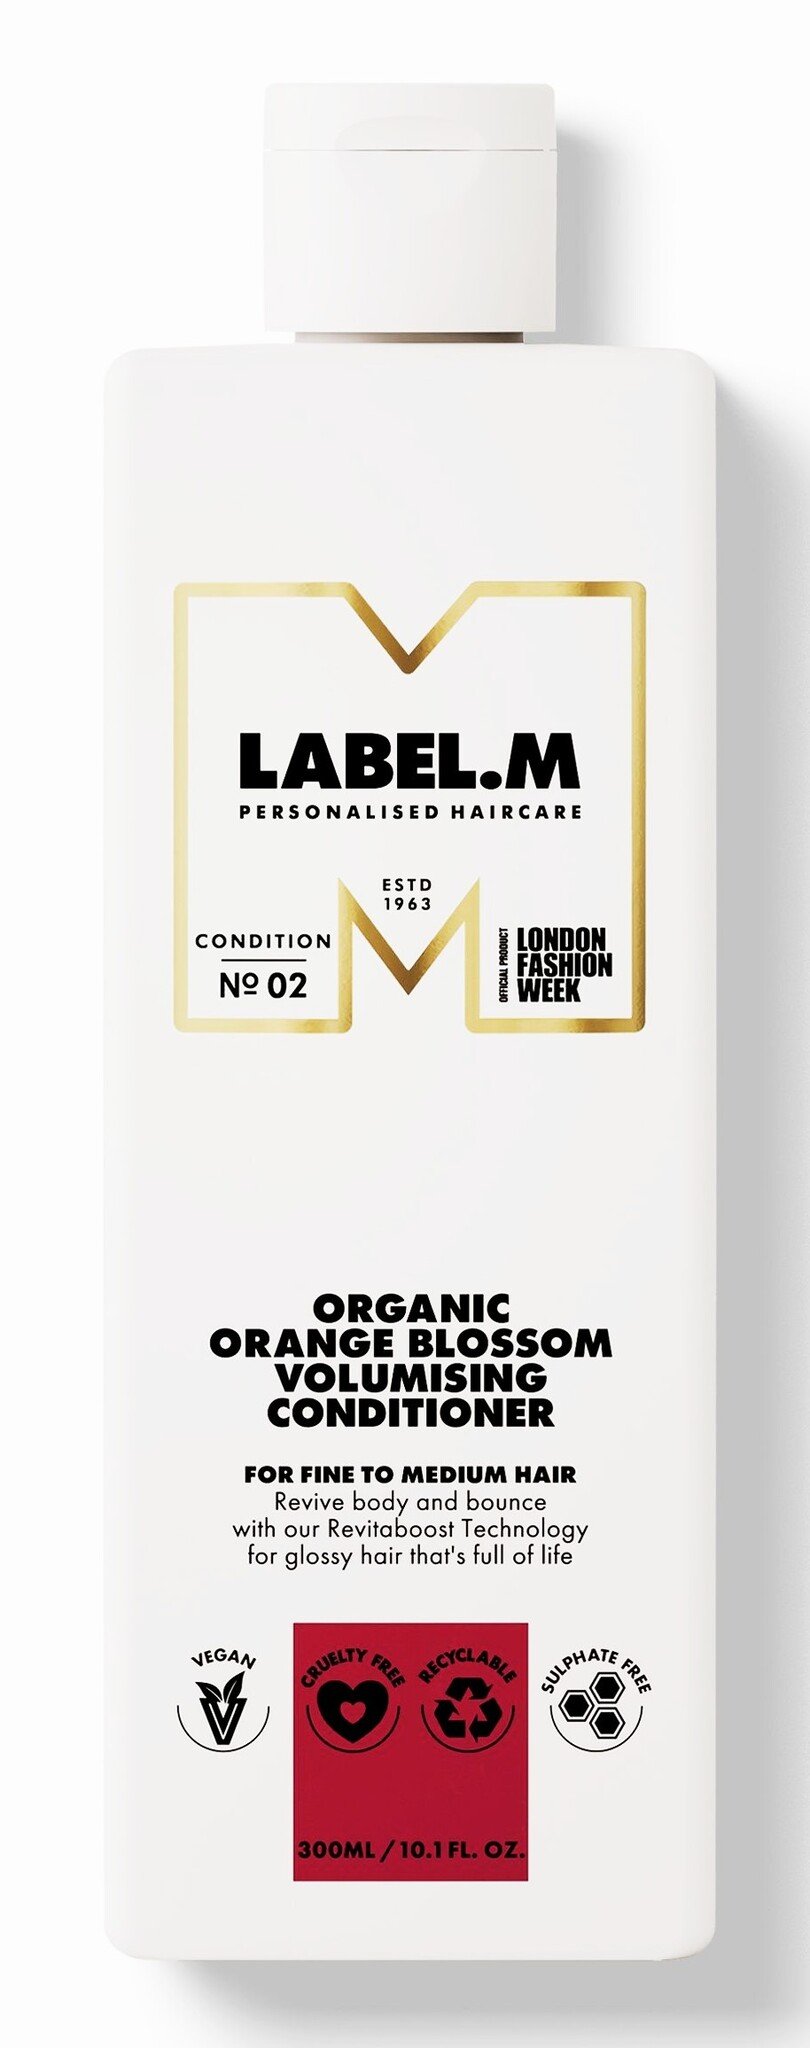 Label.m Organic Orange Blossom Volumising Conditioner 300ml